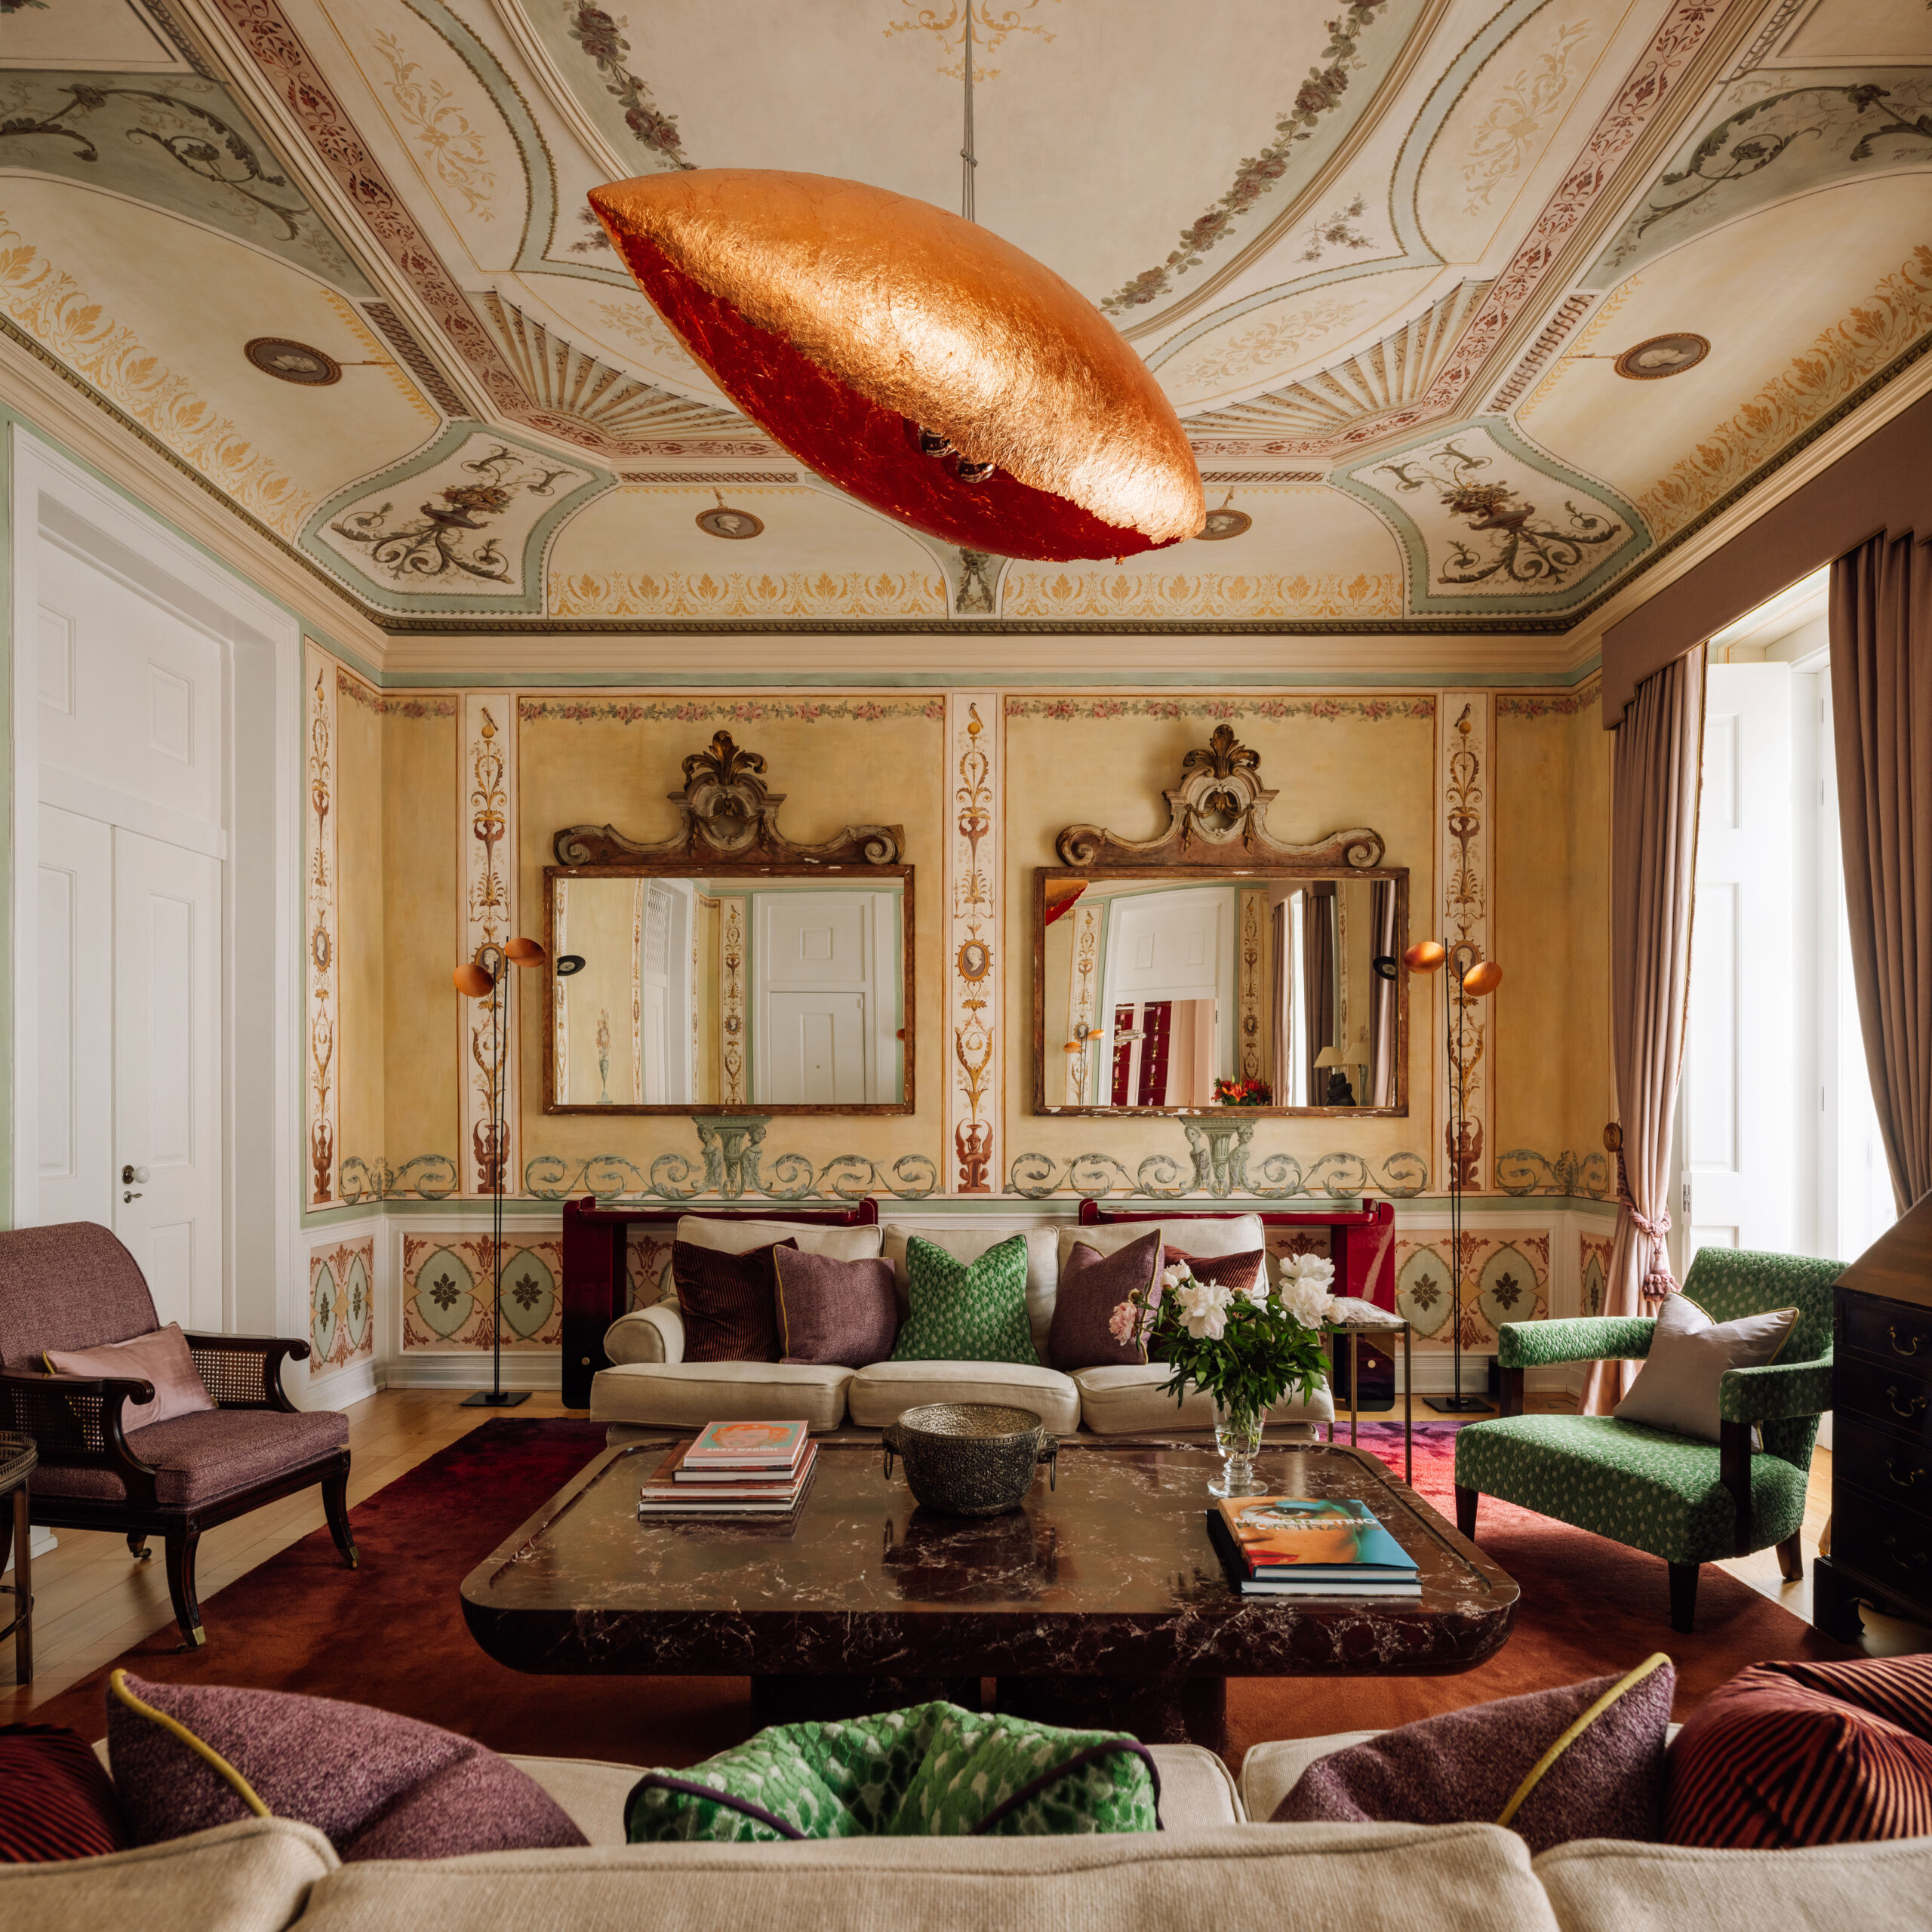 Projeto de arquitetura e interiores em Lisboa, lapa. Iluminação decorativa, sofás com almofadas e mesa de centro de mármore.